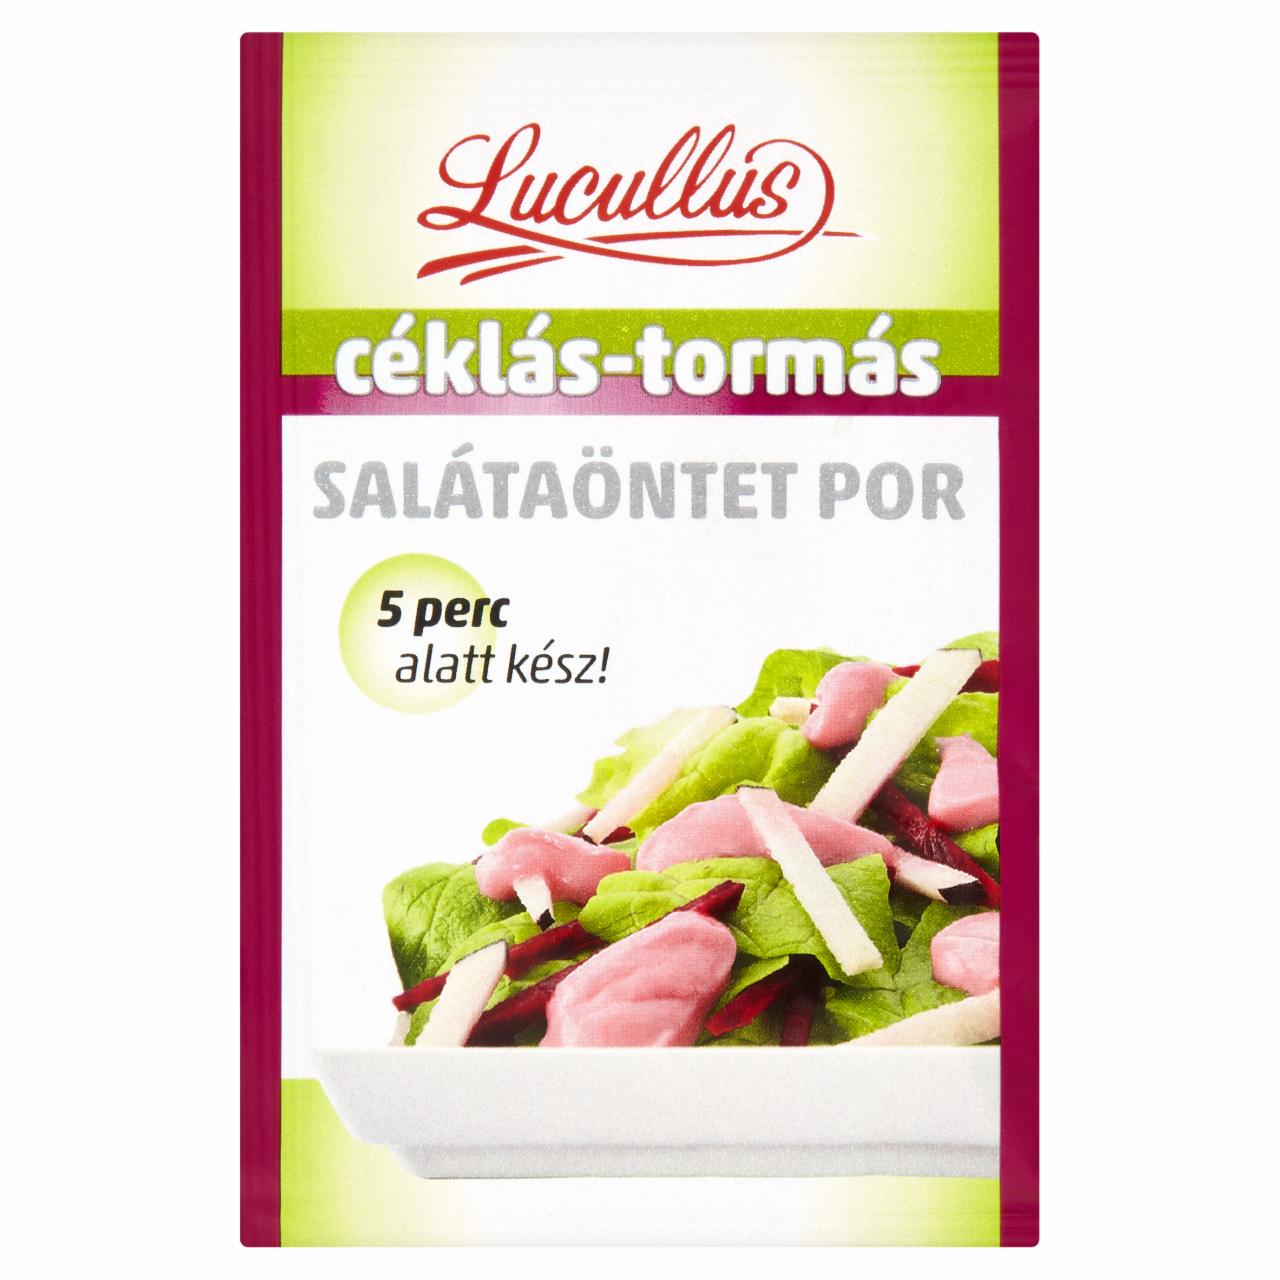 Képek - Lucullus céklás-tormás salátaöntet por 12 g